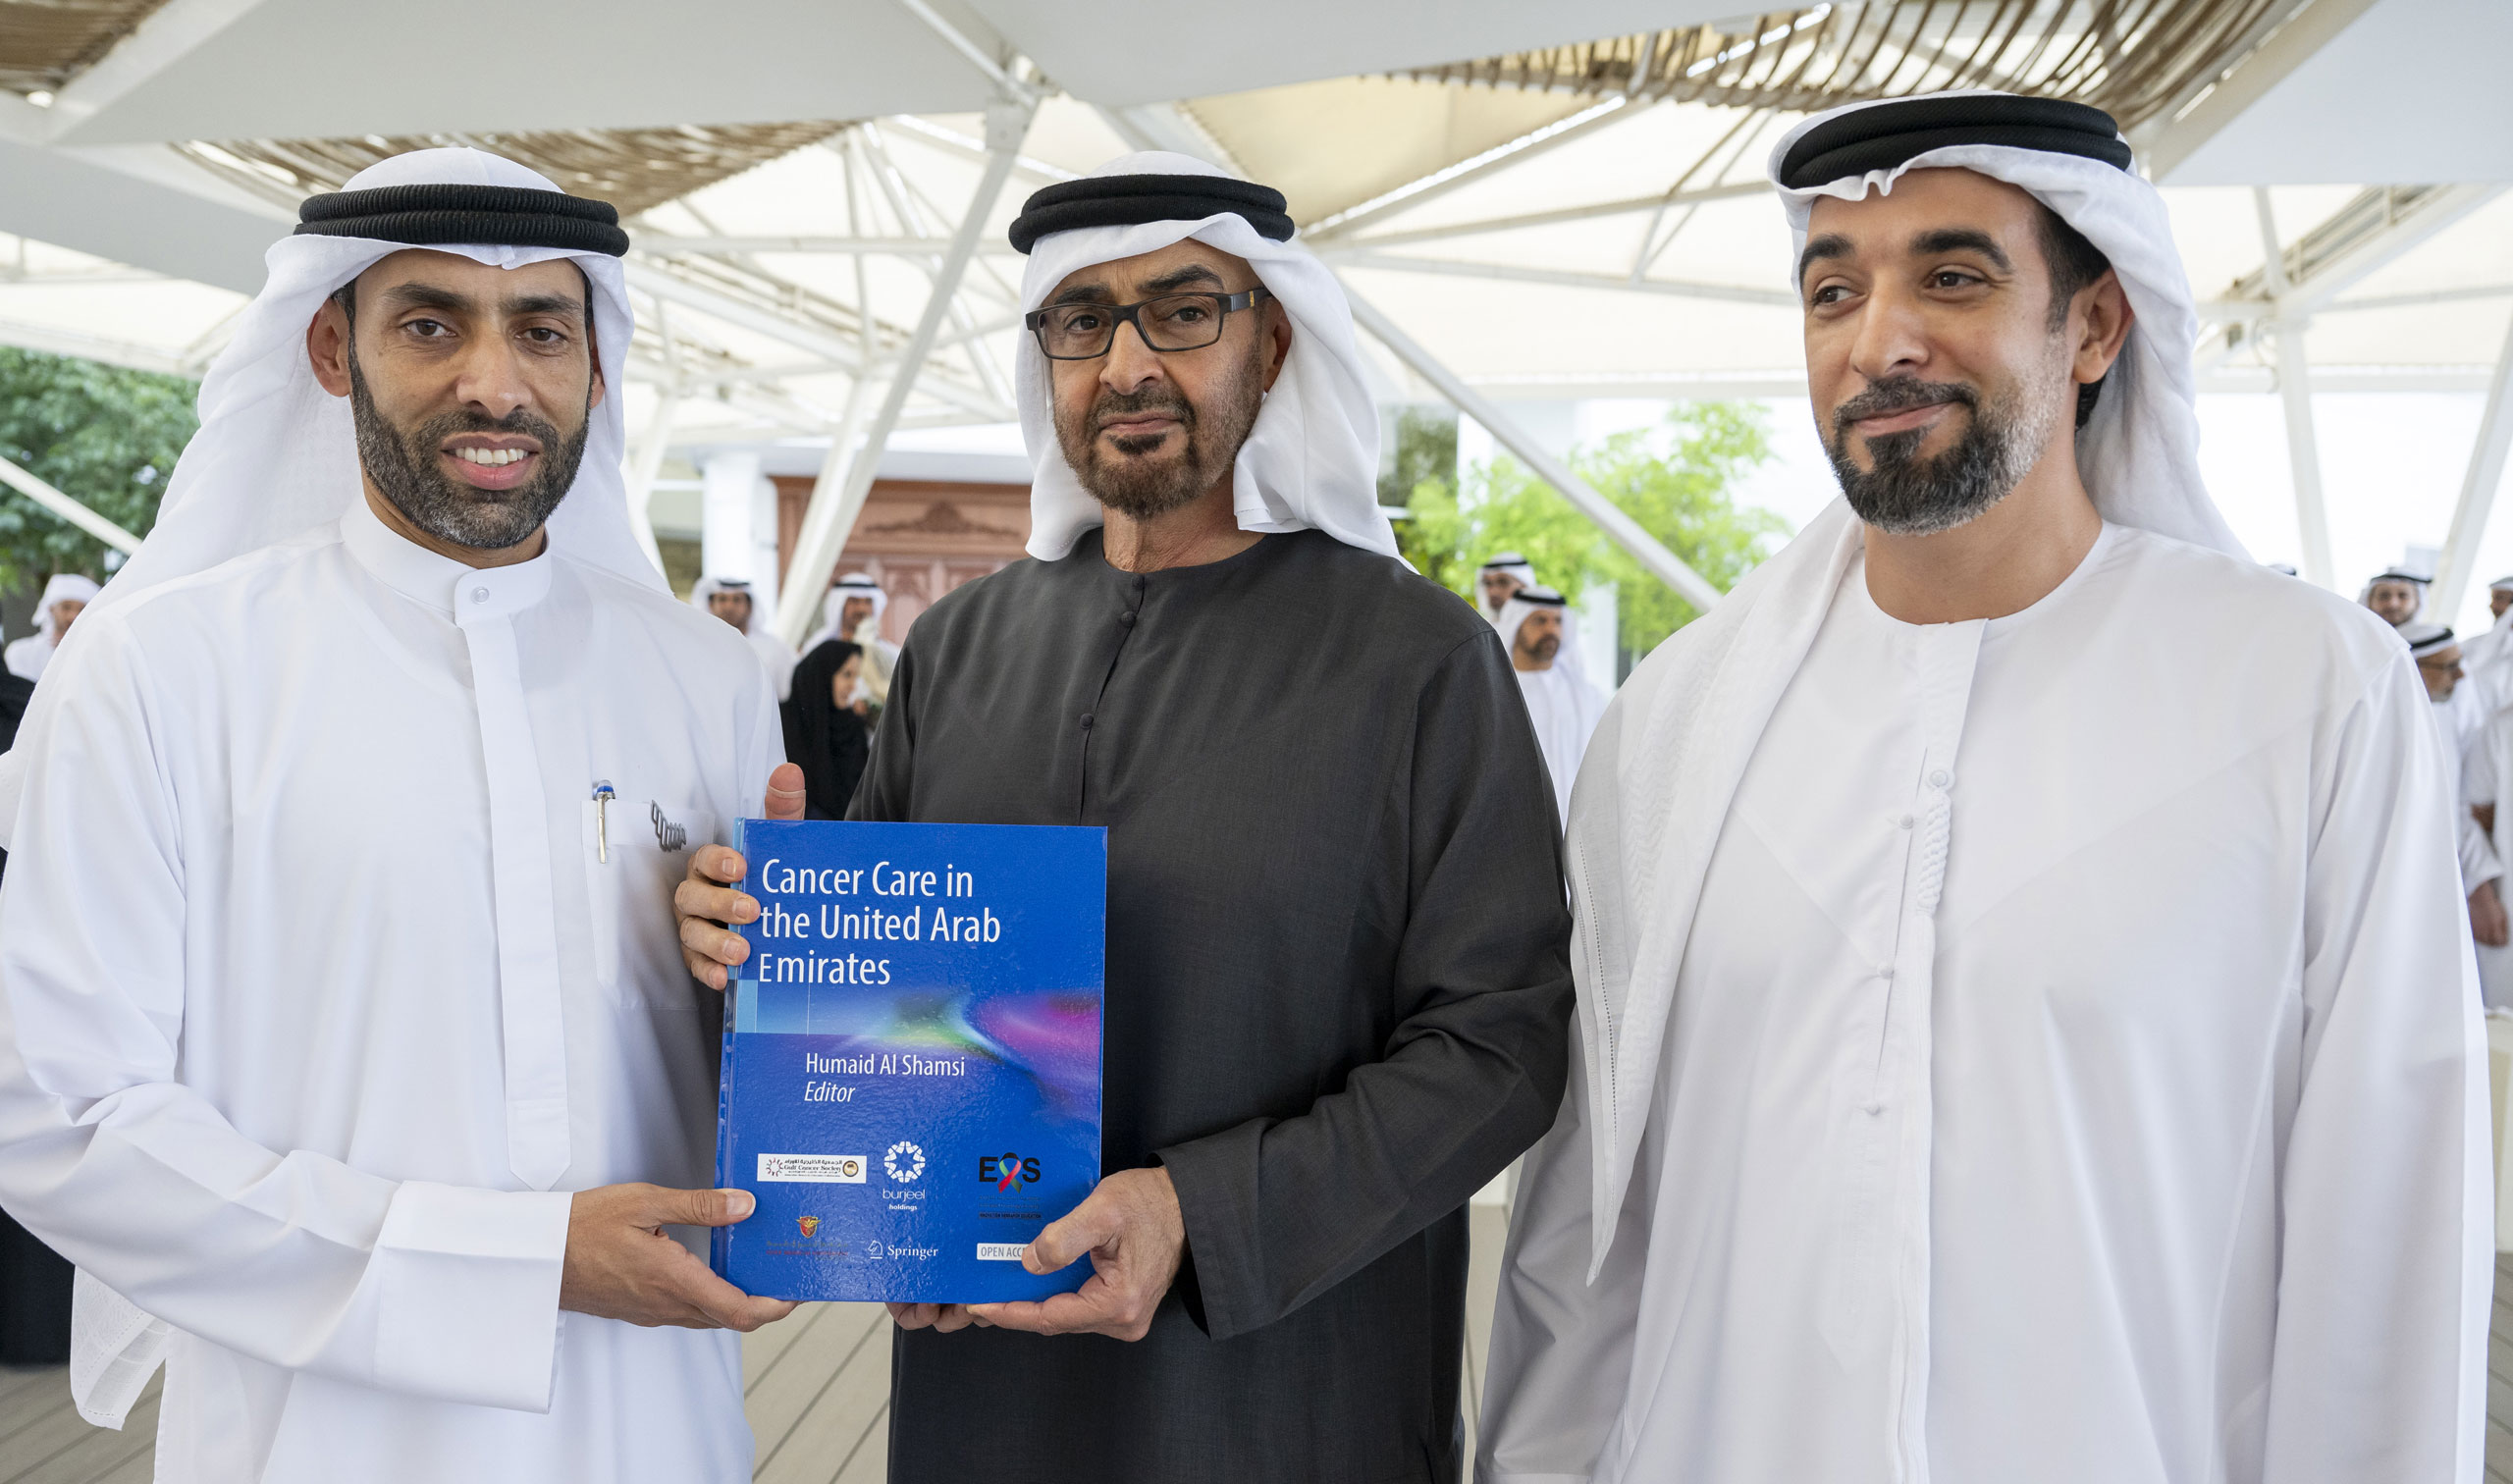 صاحب السمو الشيخ محمد بن زايد آل نهيان يتسلم النسخة الأولى من كتاب ” السرطان في دولة الإمارات “